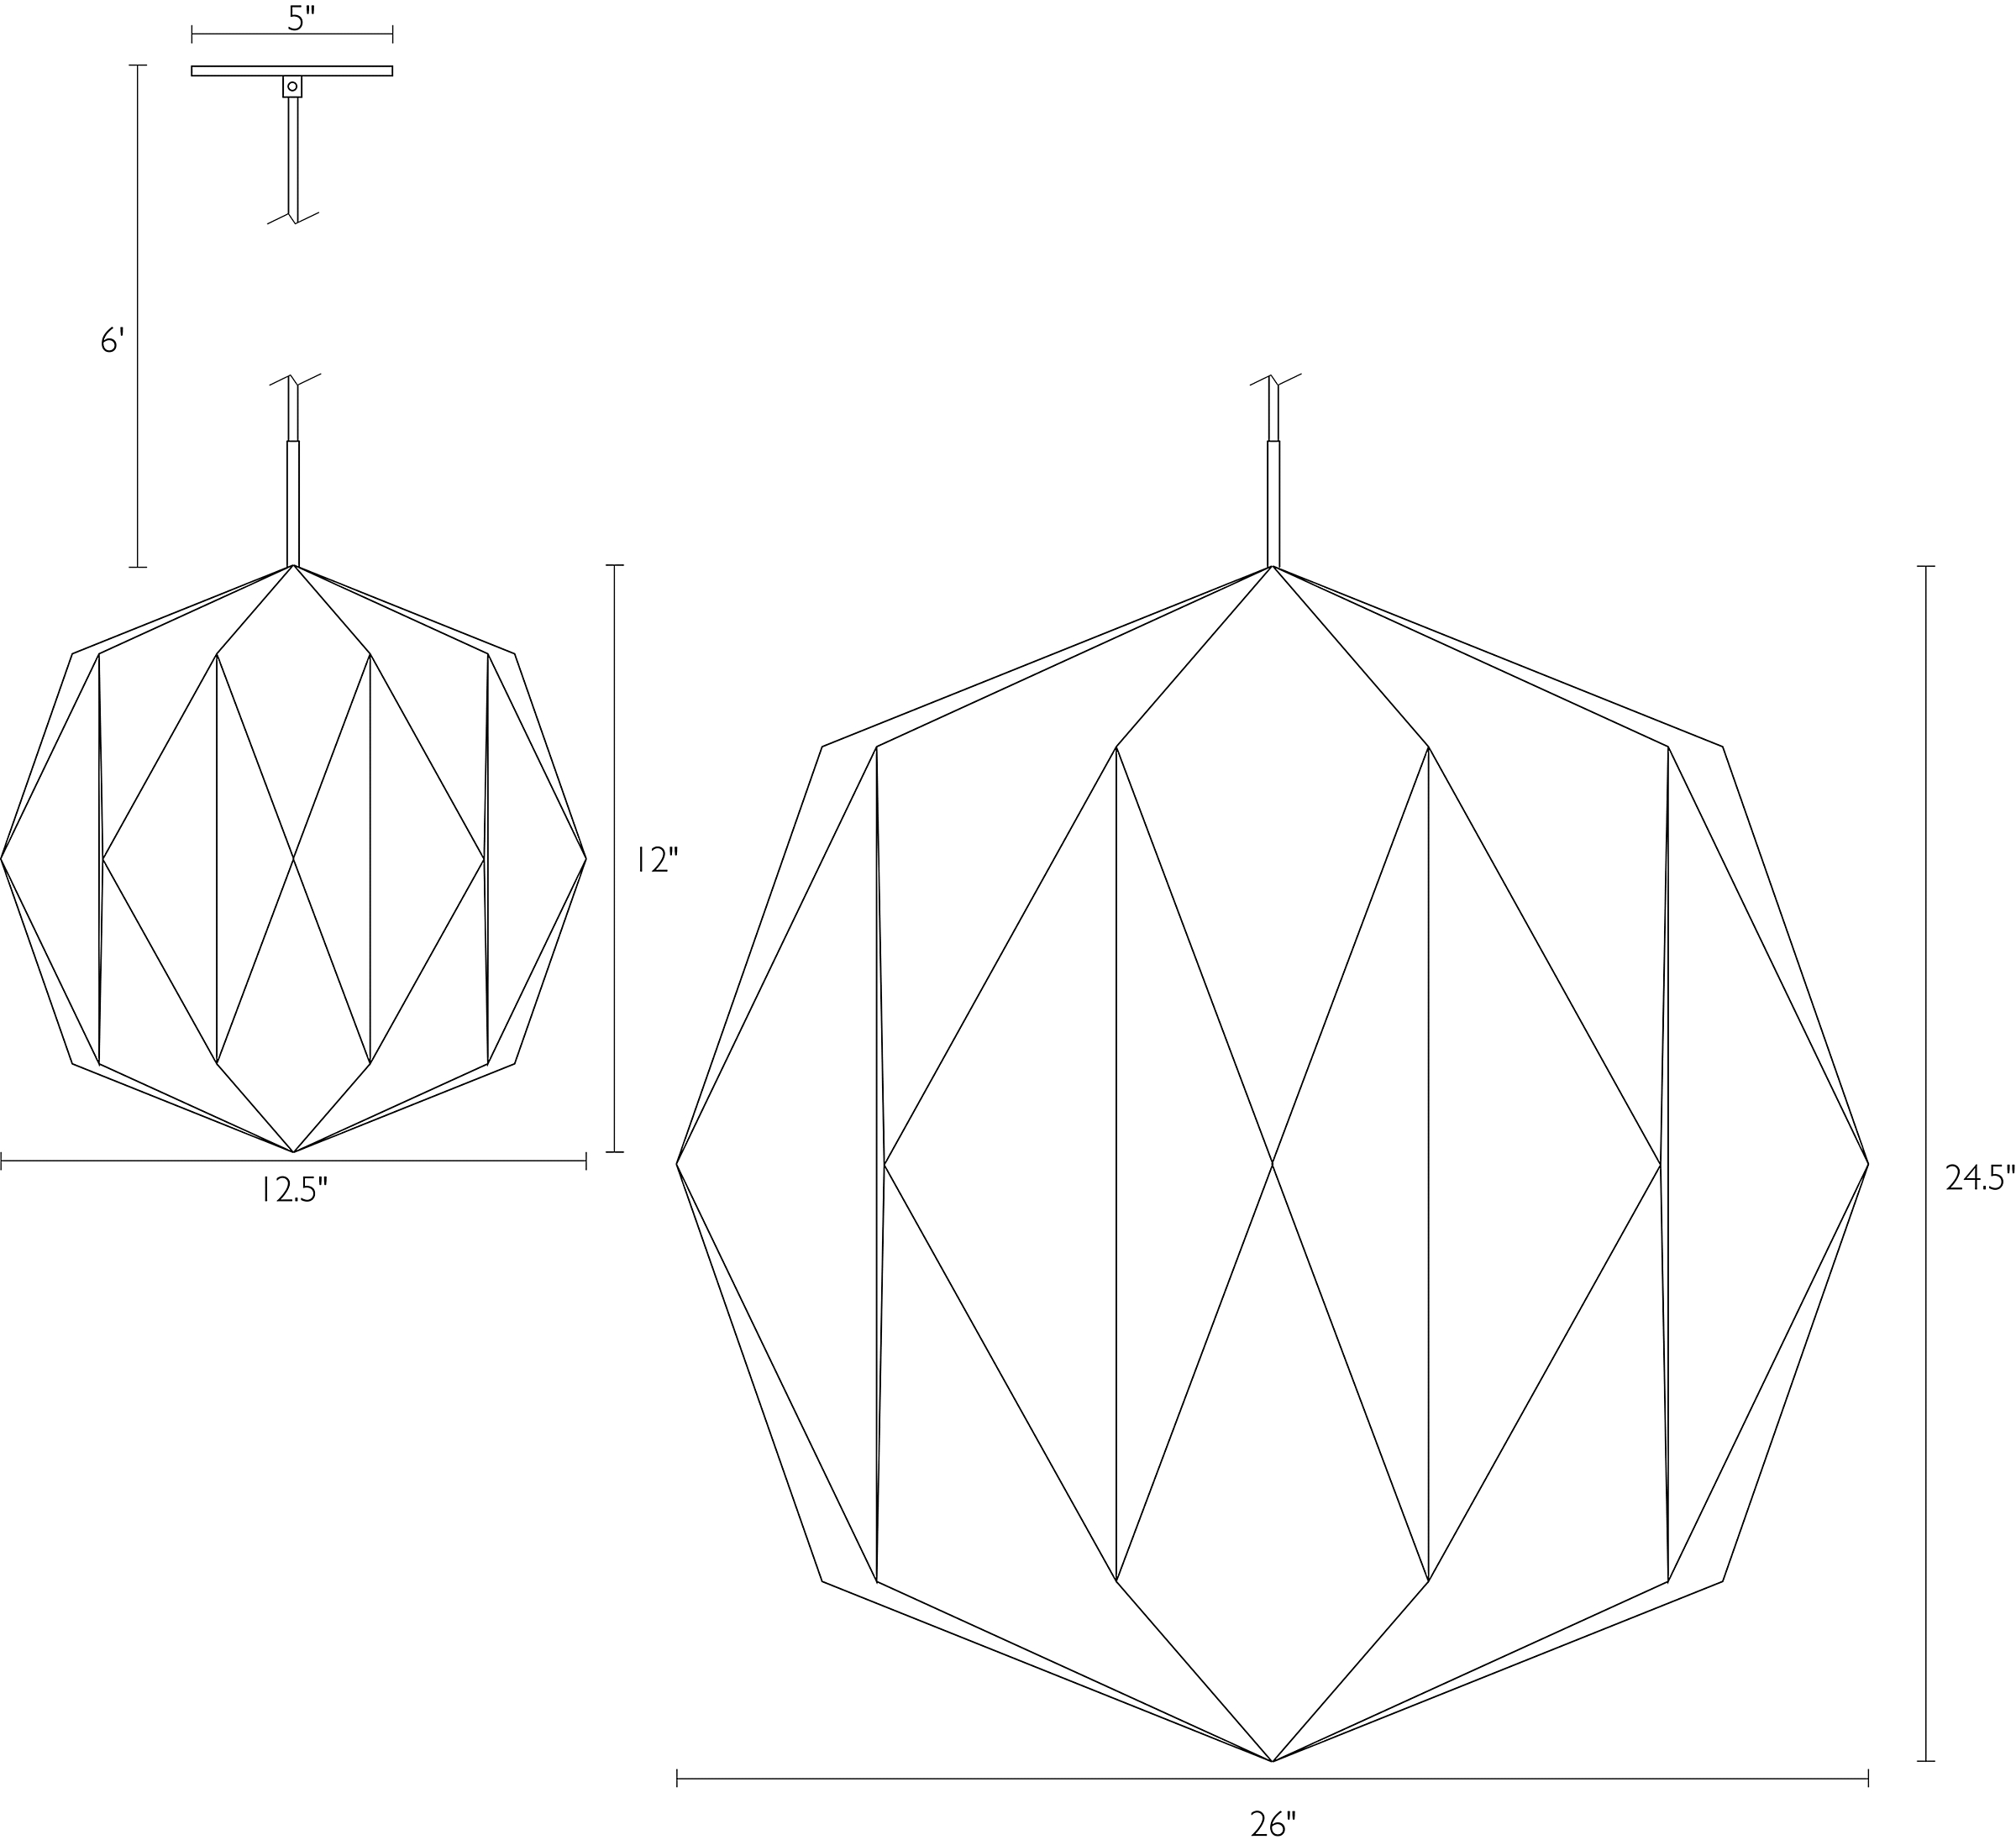 Detail of Orikata Ball pendant dimension drawings.